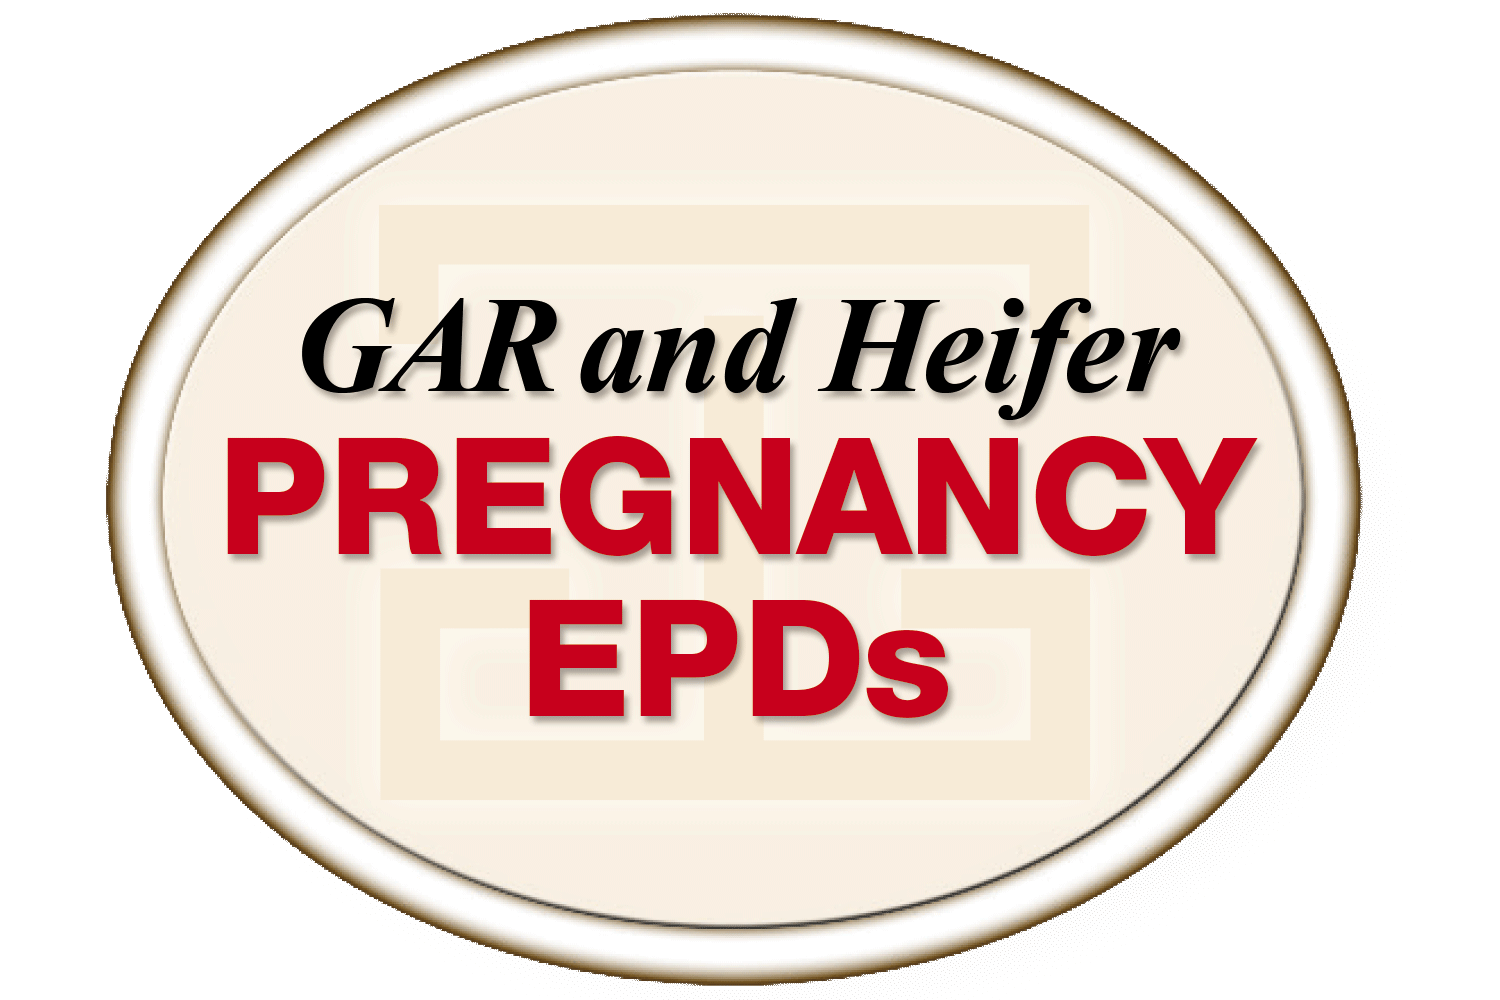 GAR and Heifer Pregnancy EPDs